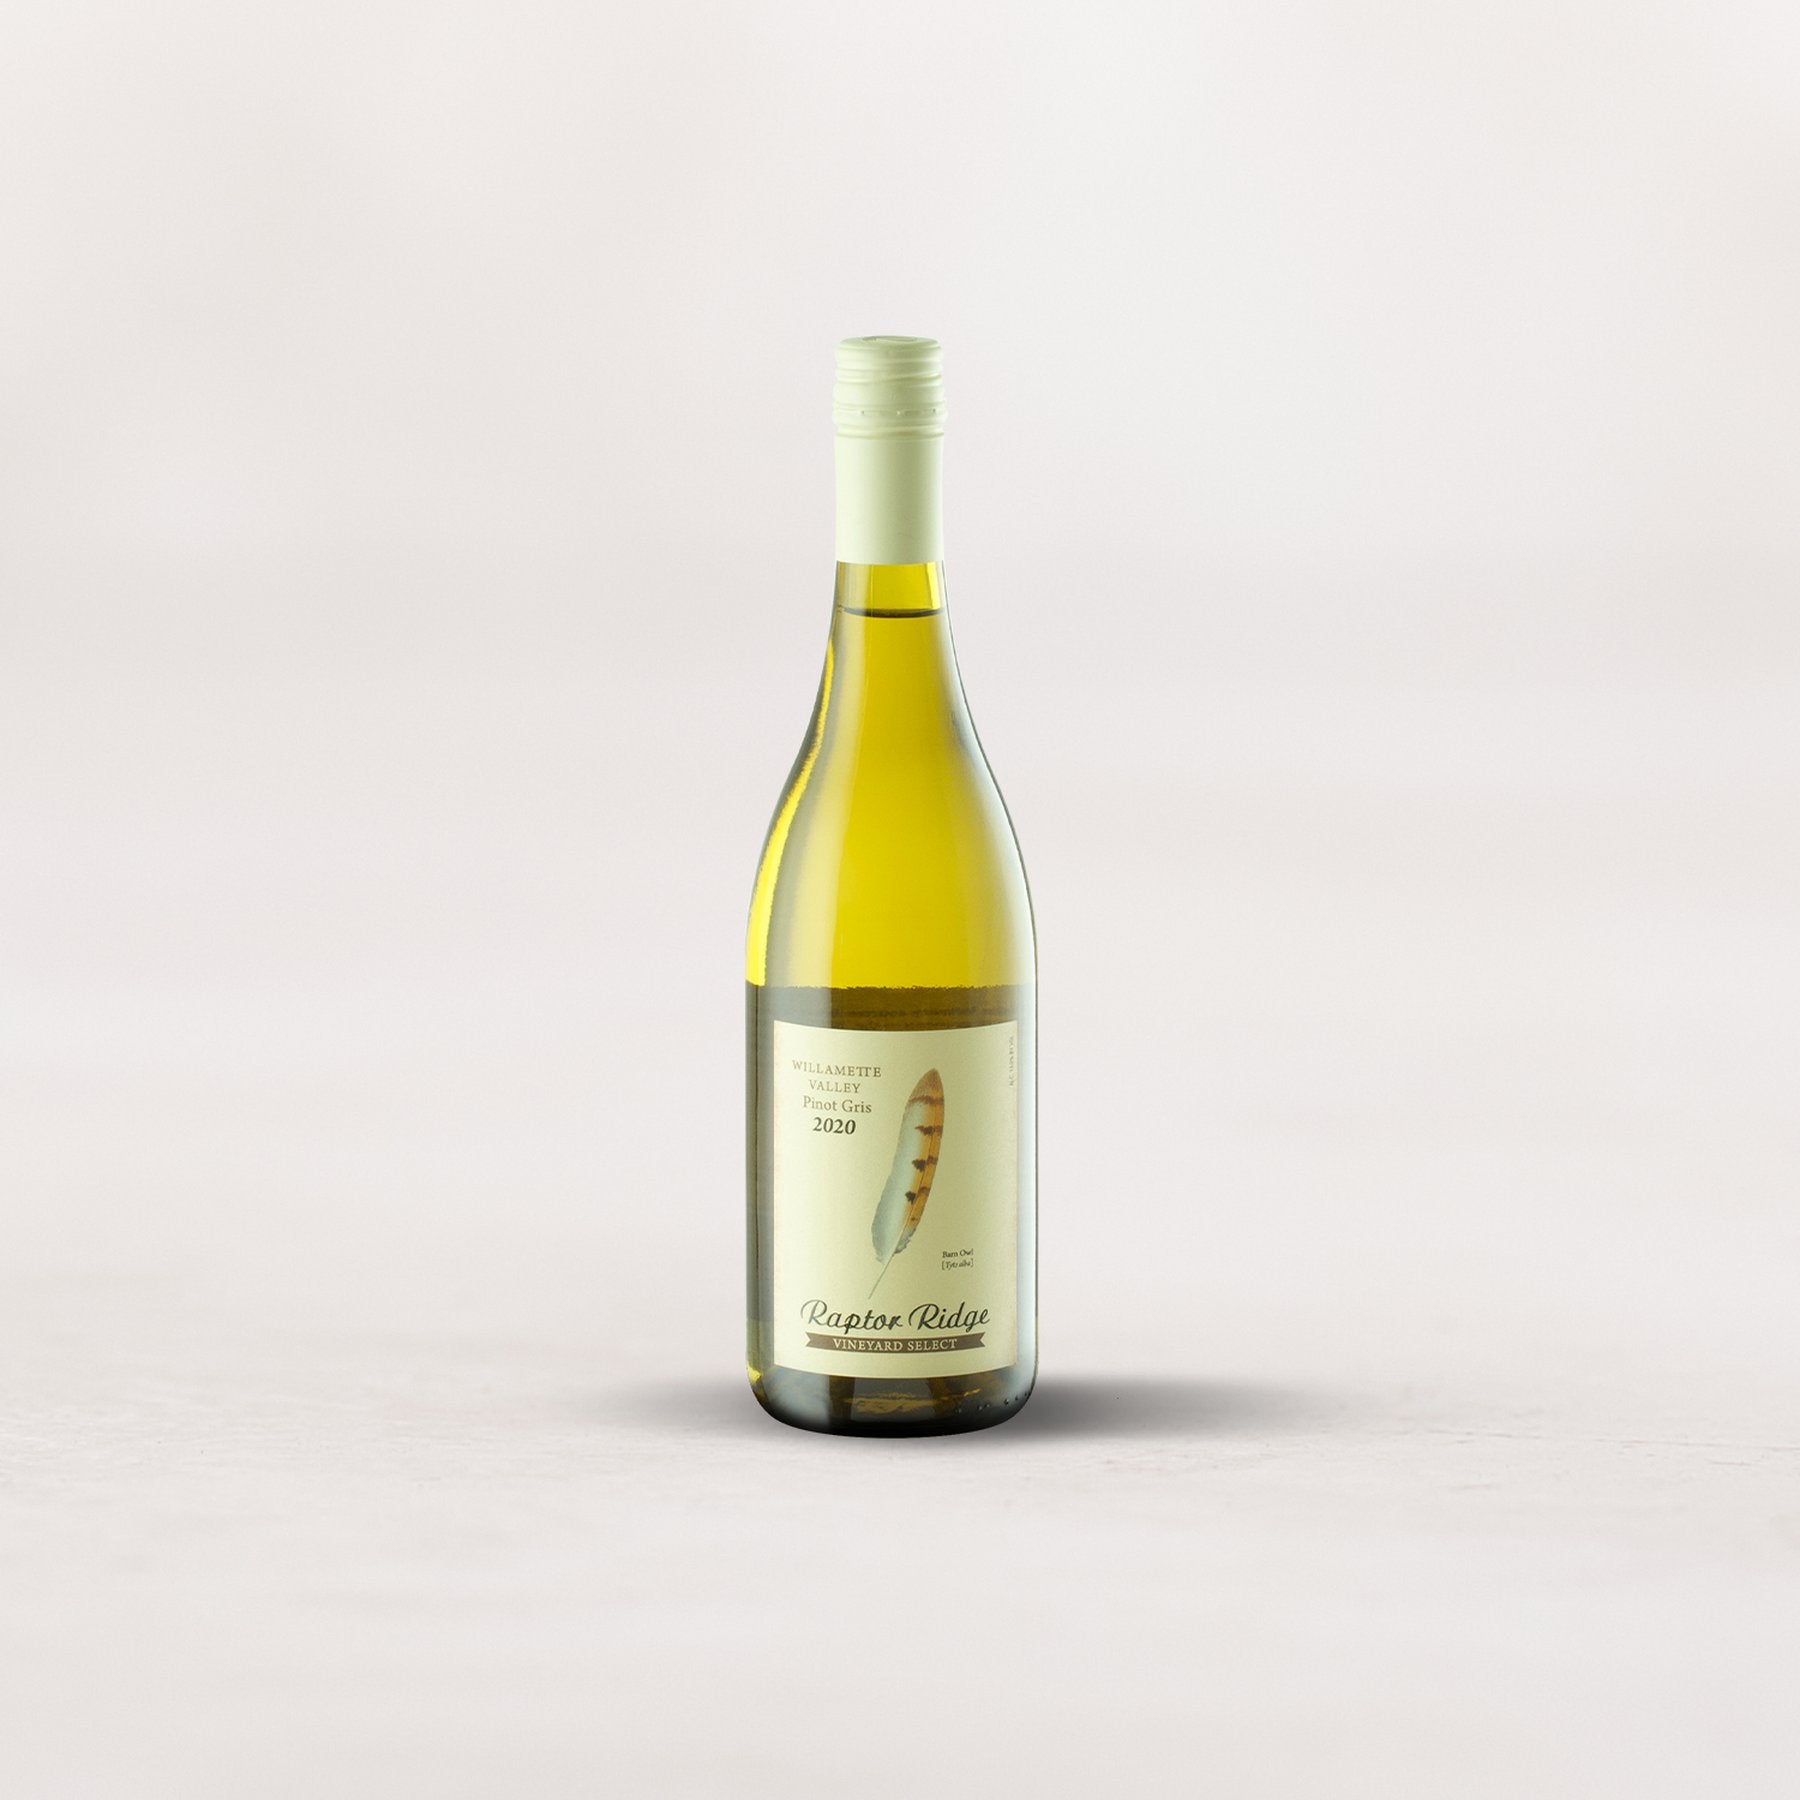 Raptor Ridge, “Vineyard Select” Pinot Gris